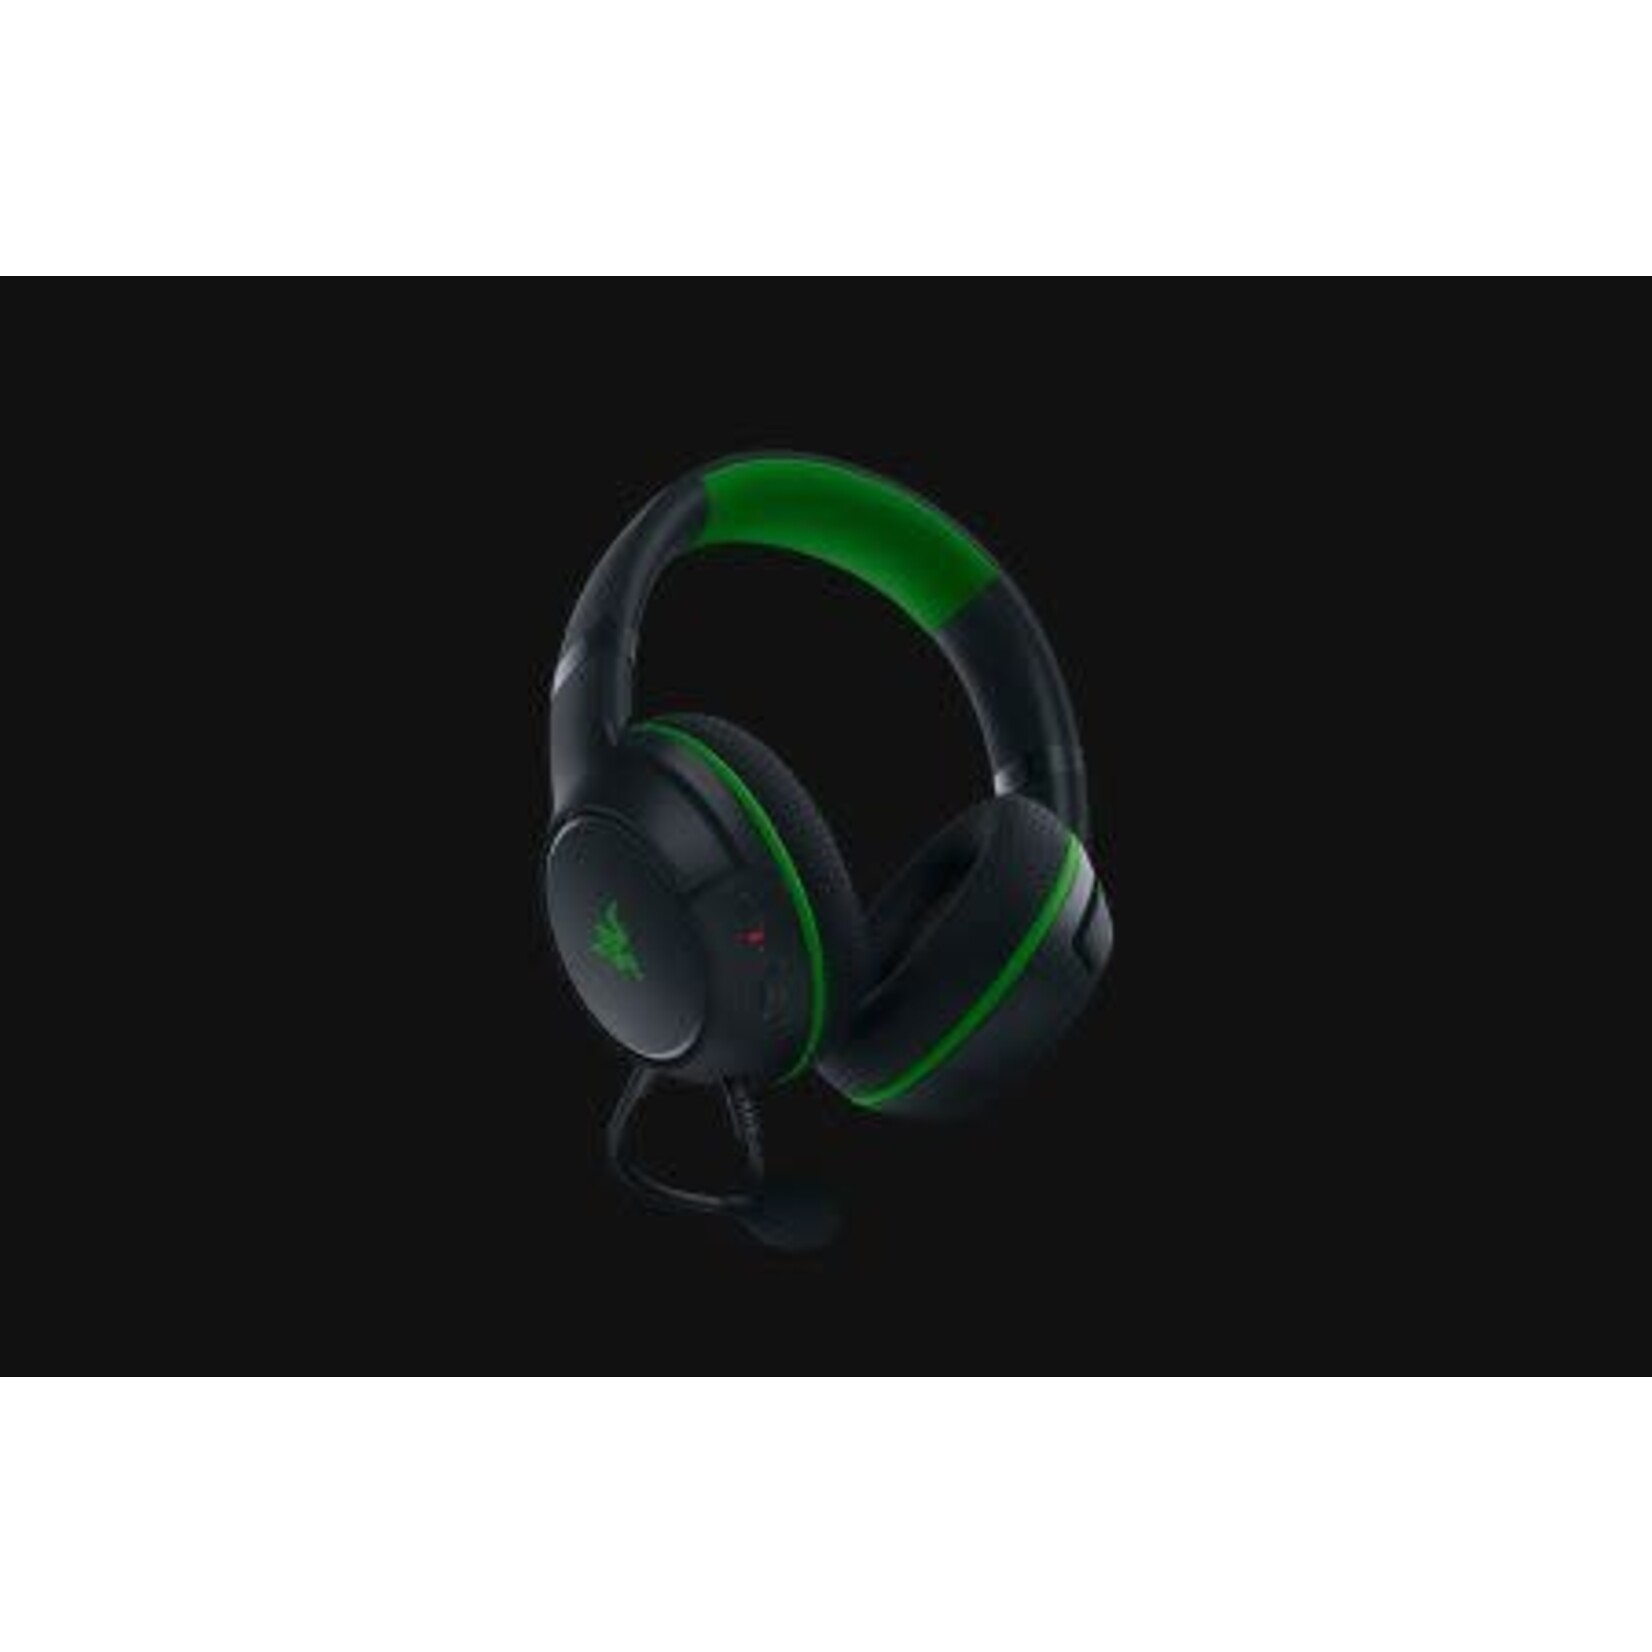 Razer **Razer Xbox Wired Gaming Headset with Boom Mic Black